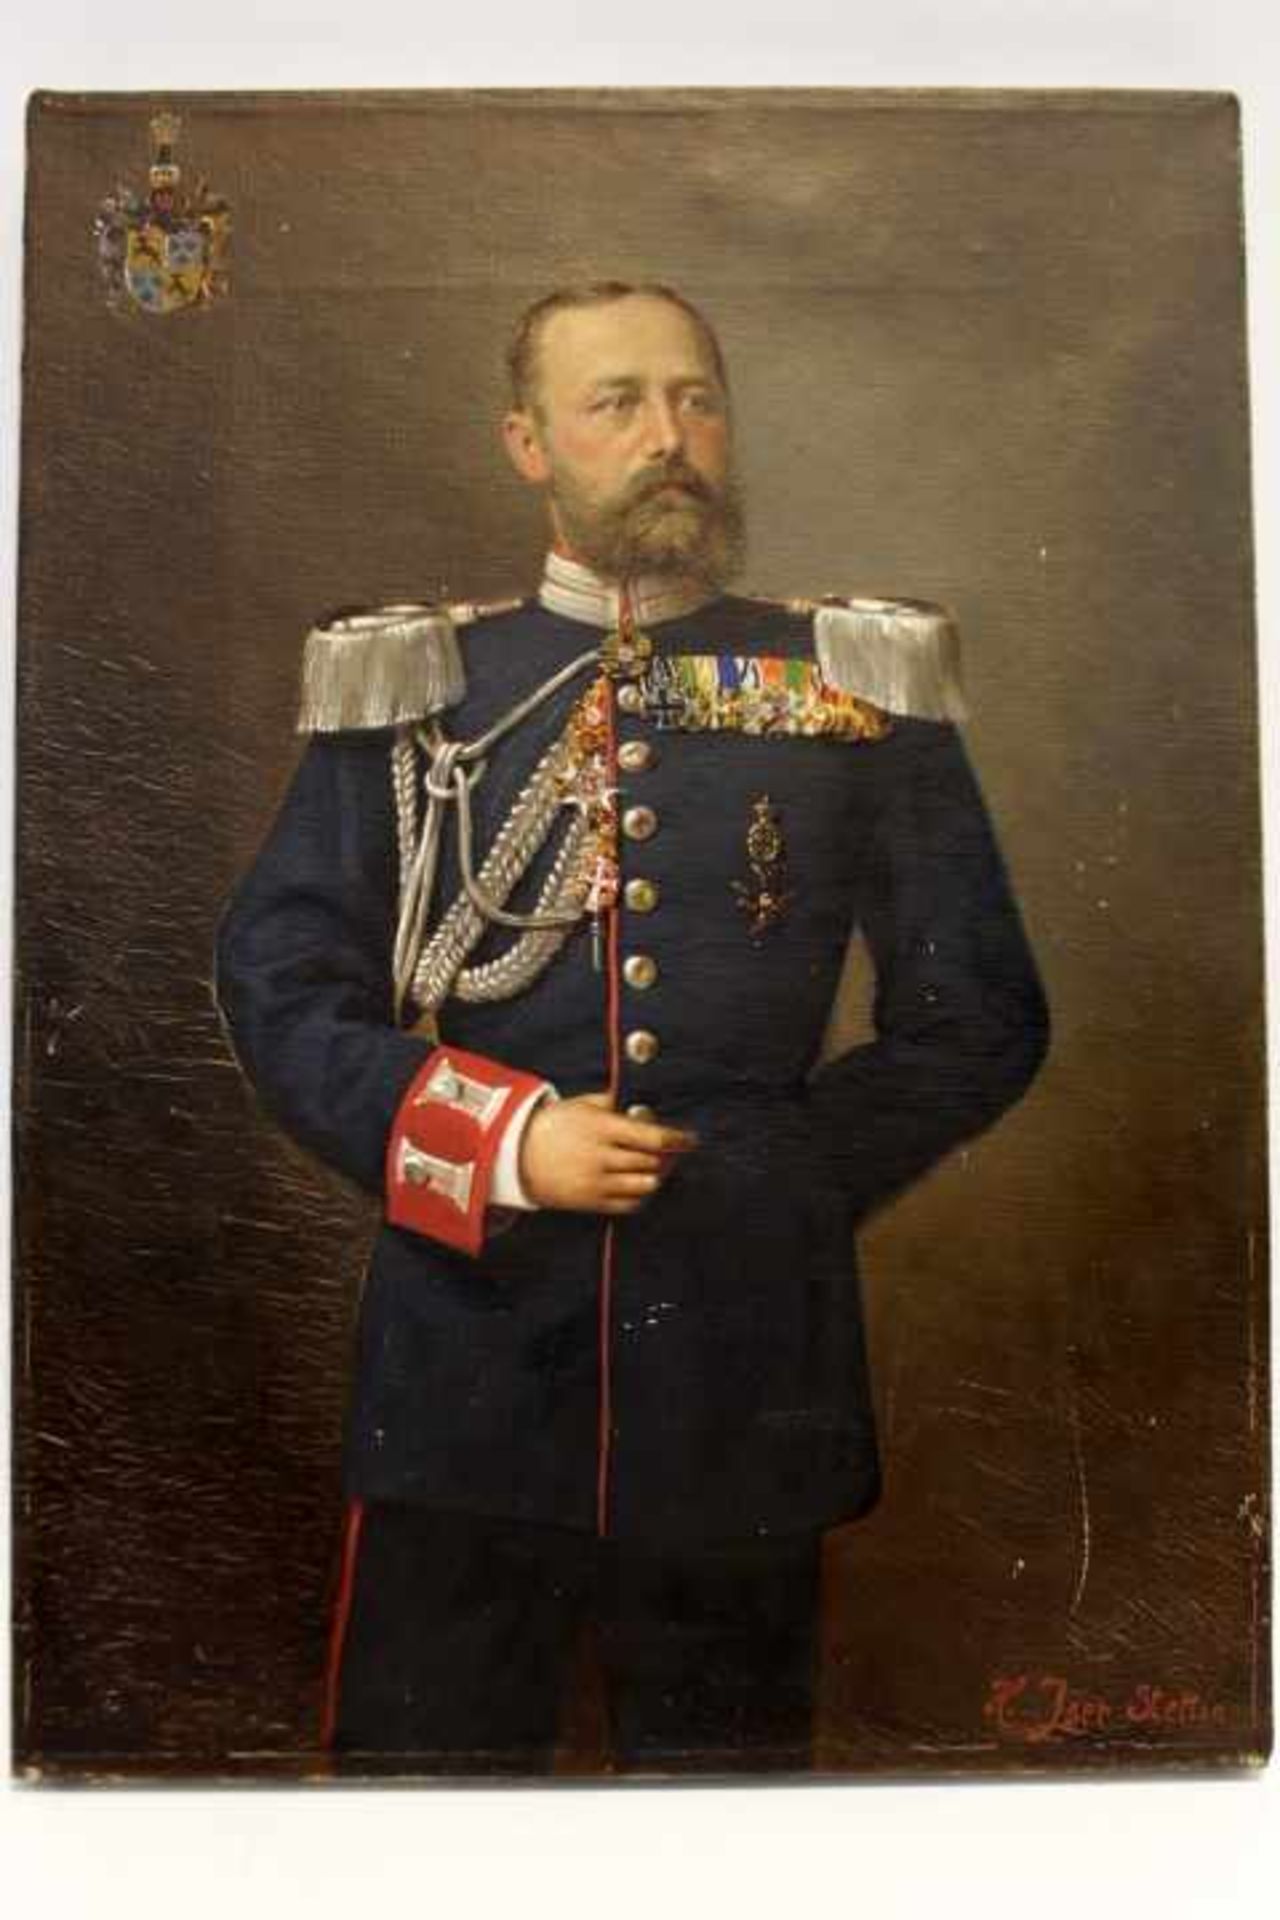 Maximilian Freiherr von Bodman1873-1953Adelsportraitder genannte in UniformLinks oben Familien